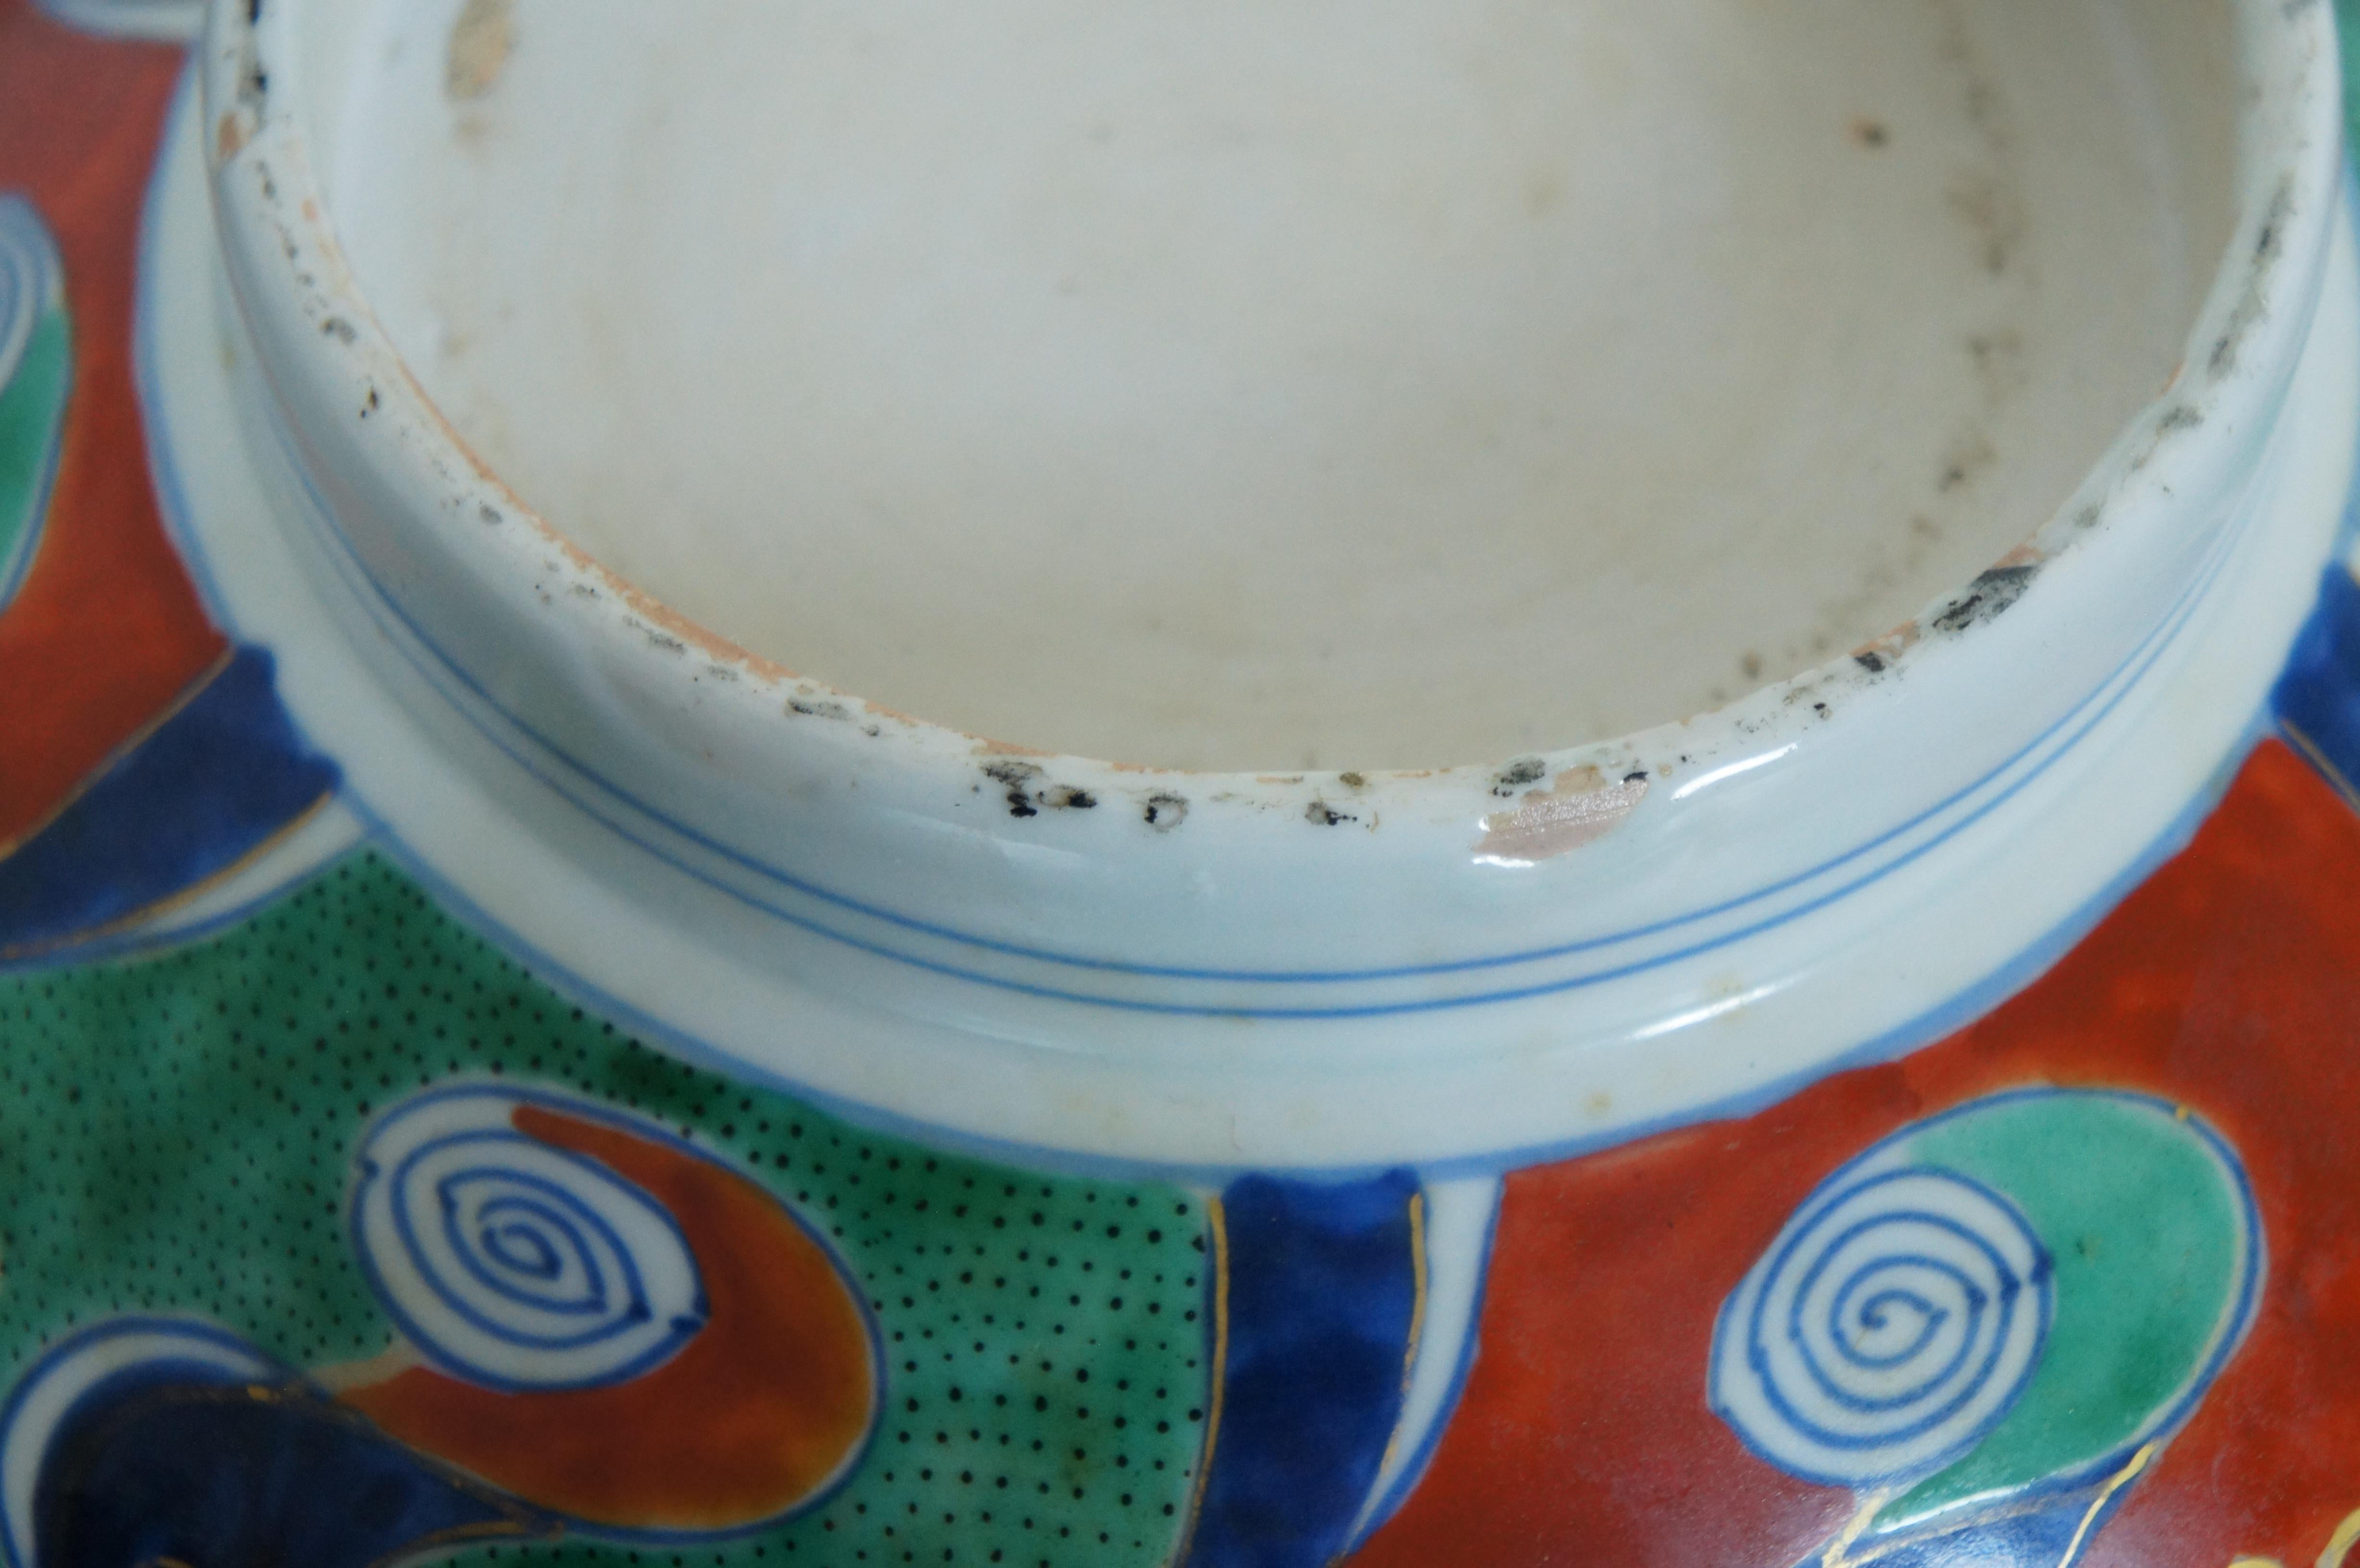 Antique 19th Century Japanese Imari Meiji Porcelain Serving Bowl Centerpiece 11